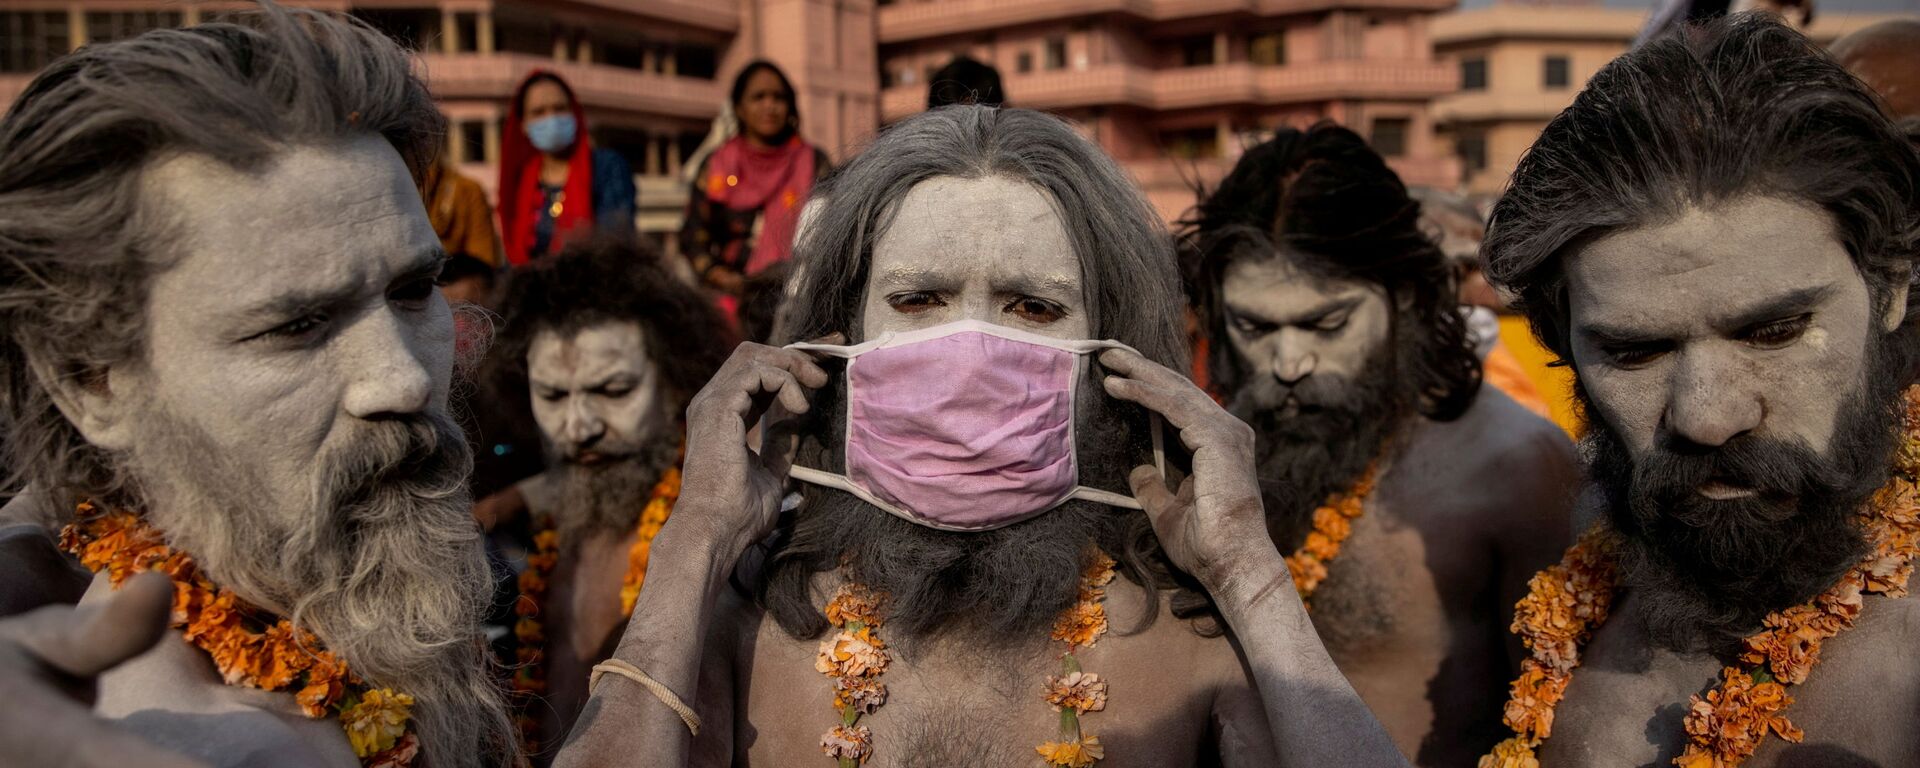 Нага Садху надевает маску перед процессией для купания в реке Ганг на Фестивале кувшинов в Харидваре, Индия - Sputnik Молдова, 1920, 10.08.2021